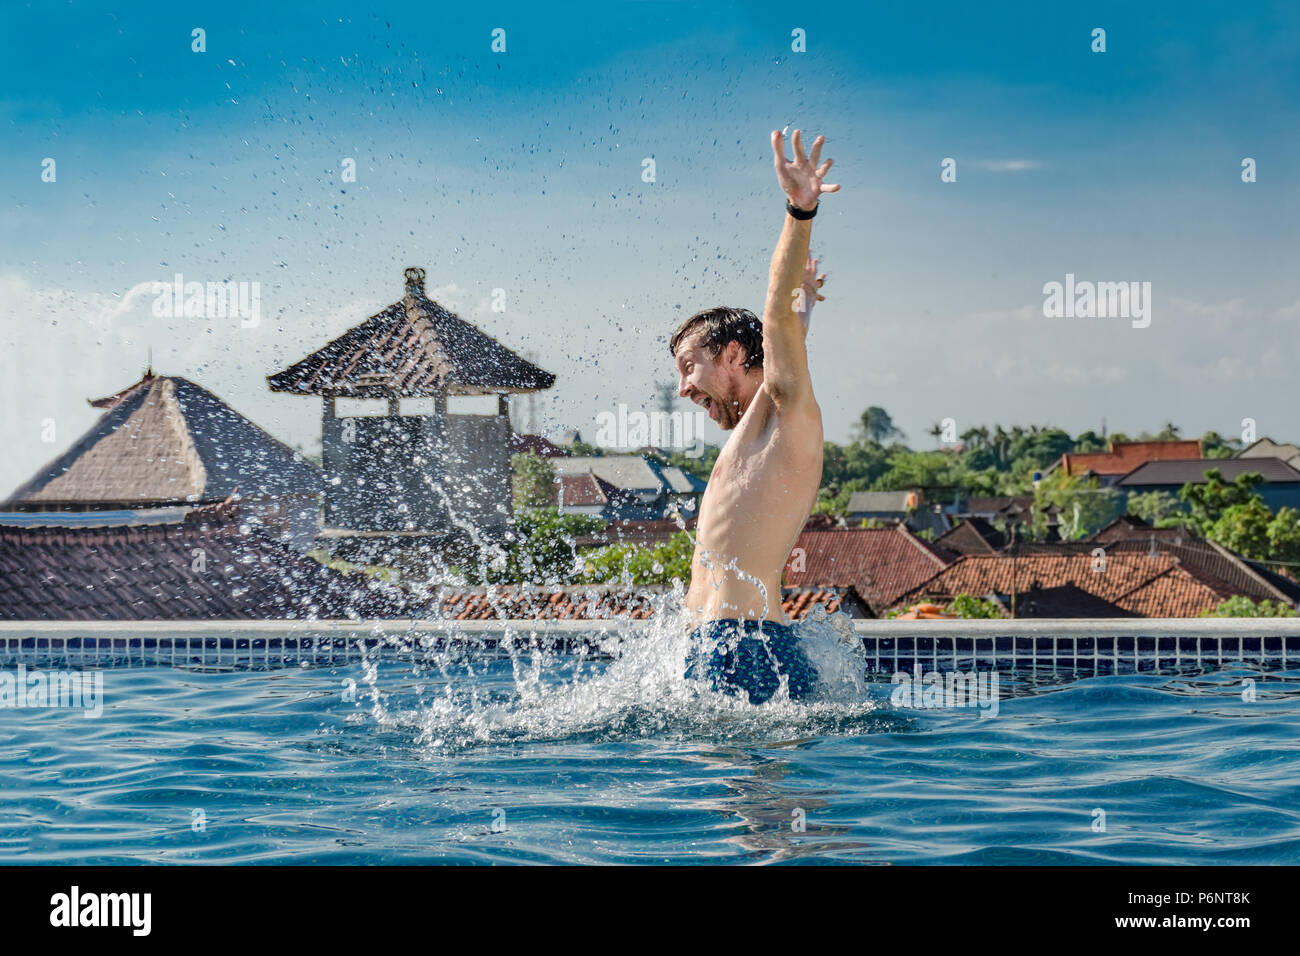 Sommer leben - sehr glücklich, schlanke junge lächelnde Mann, aus dem Pool Wasser springen mit Spritzern, auf dem Dach, und die Hände hoch. Emotionen, Freude, Glück. Stockfoto